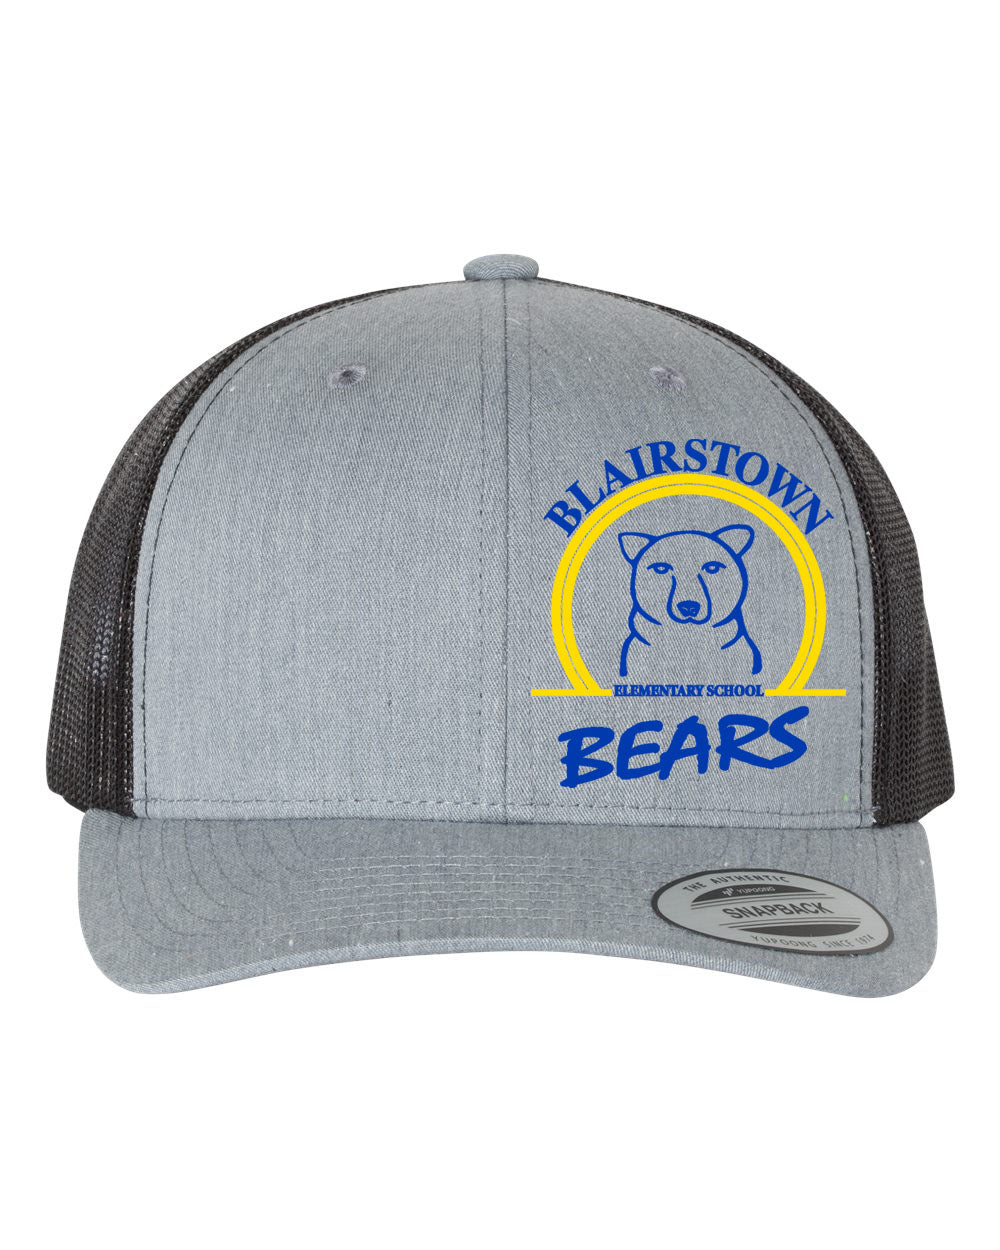 Blairstown Bears Design 10 Trucker Hat